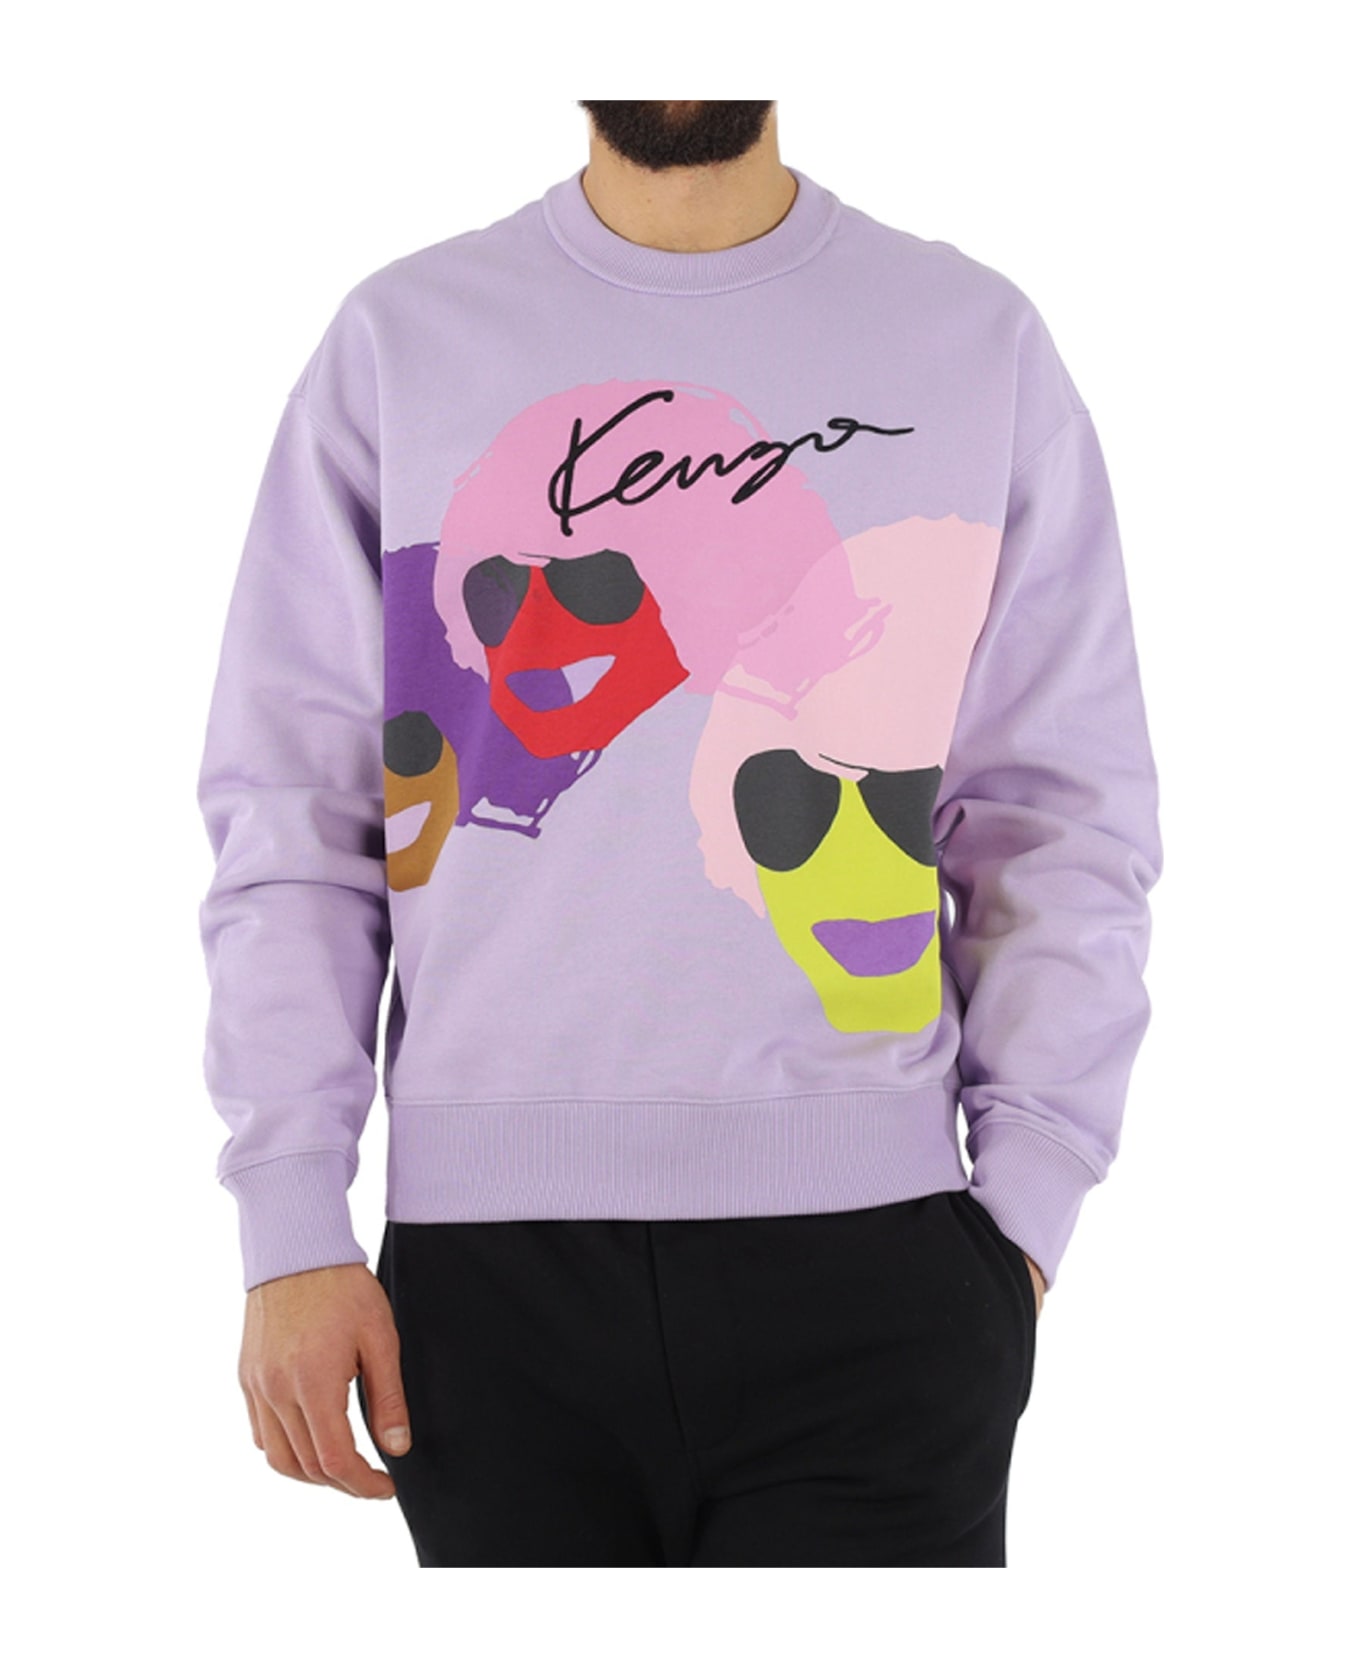 Kenzo Graphic Oversize Sweatshirt - Lilac